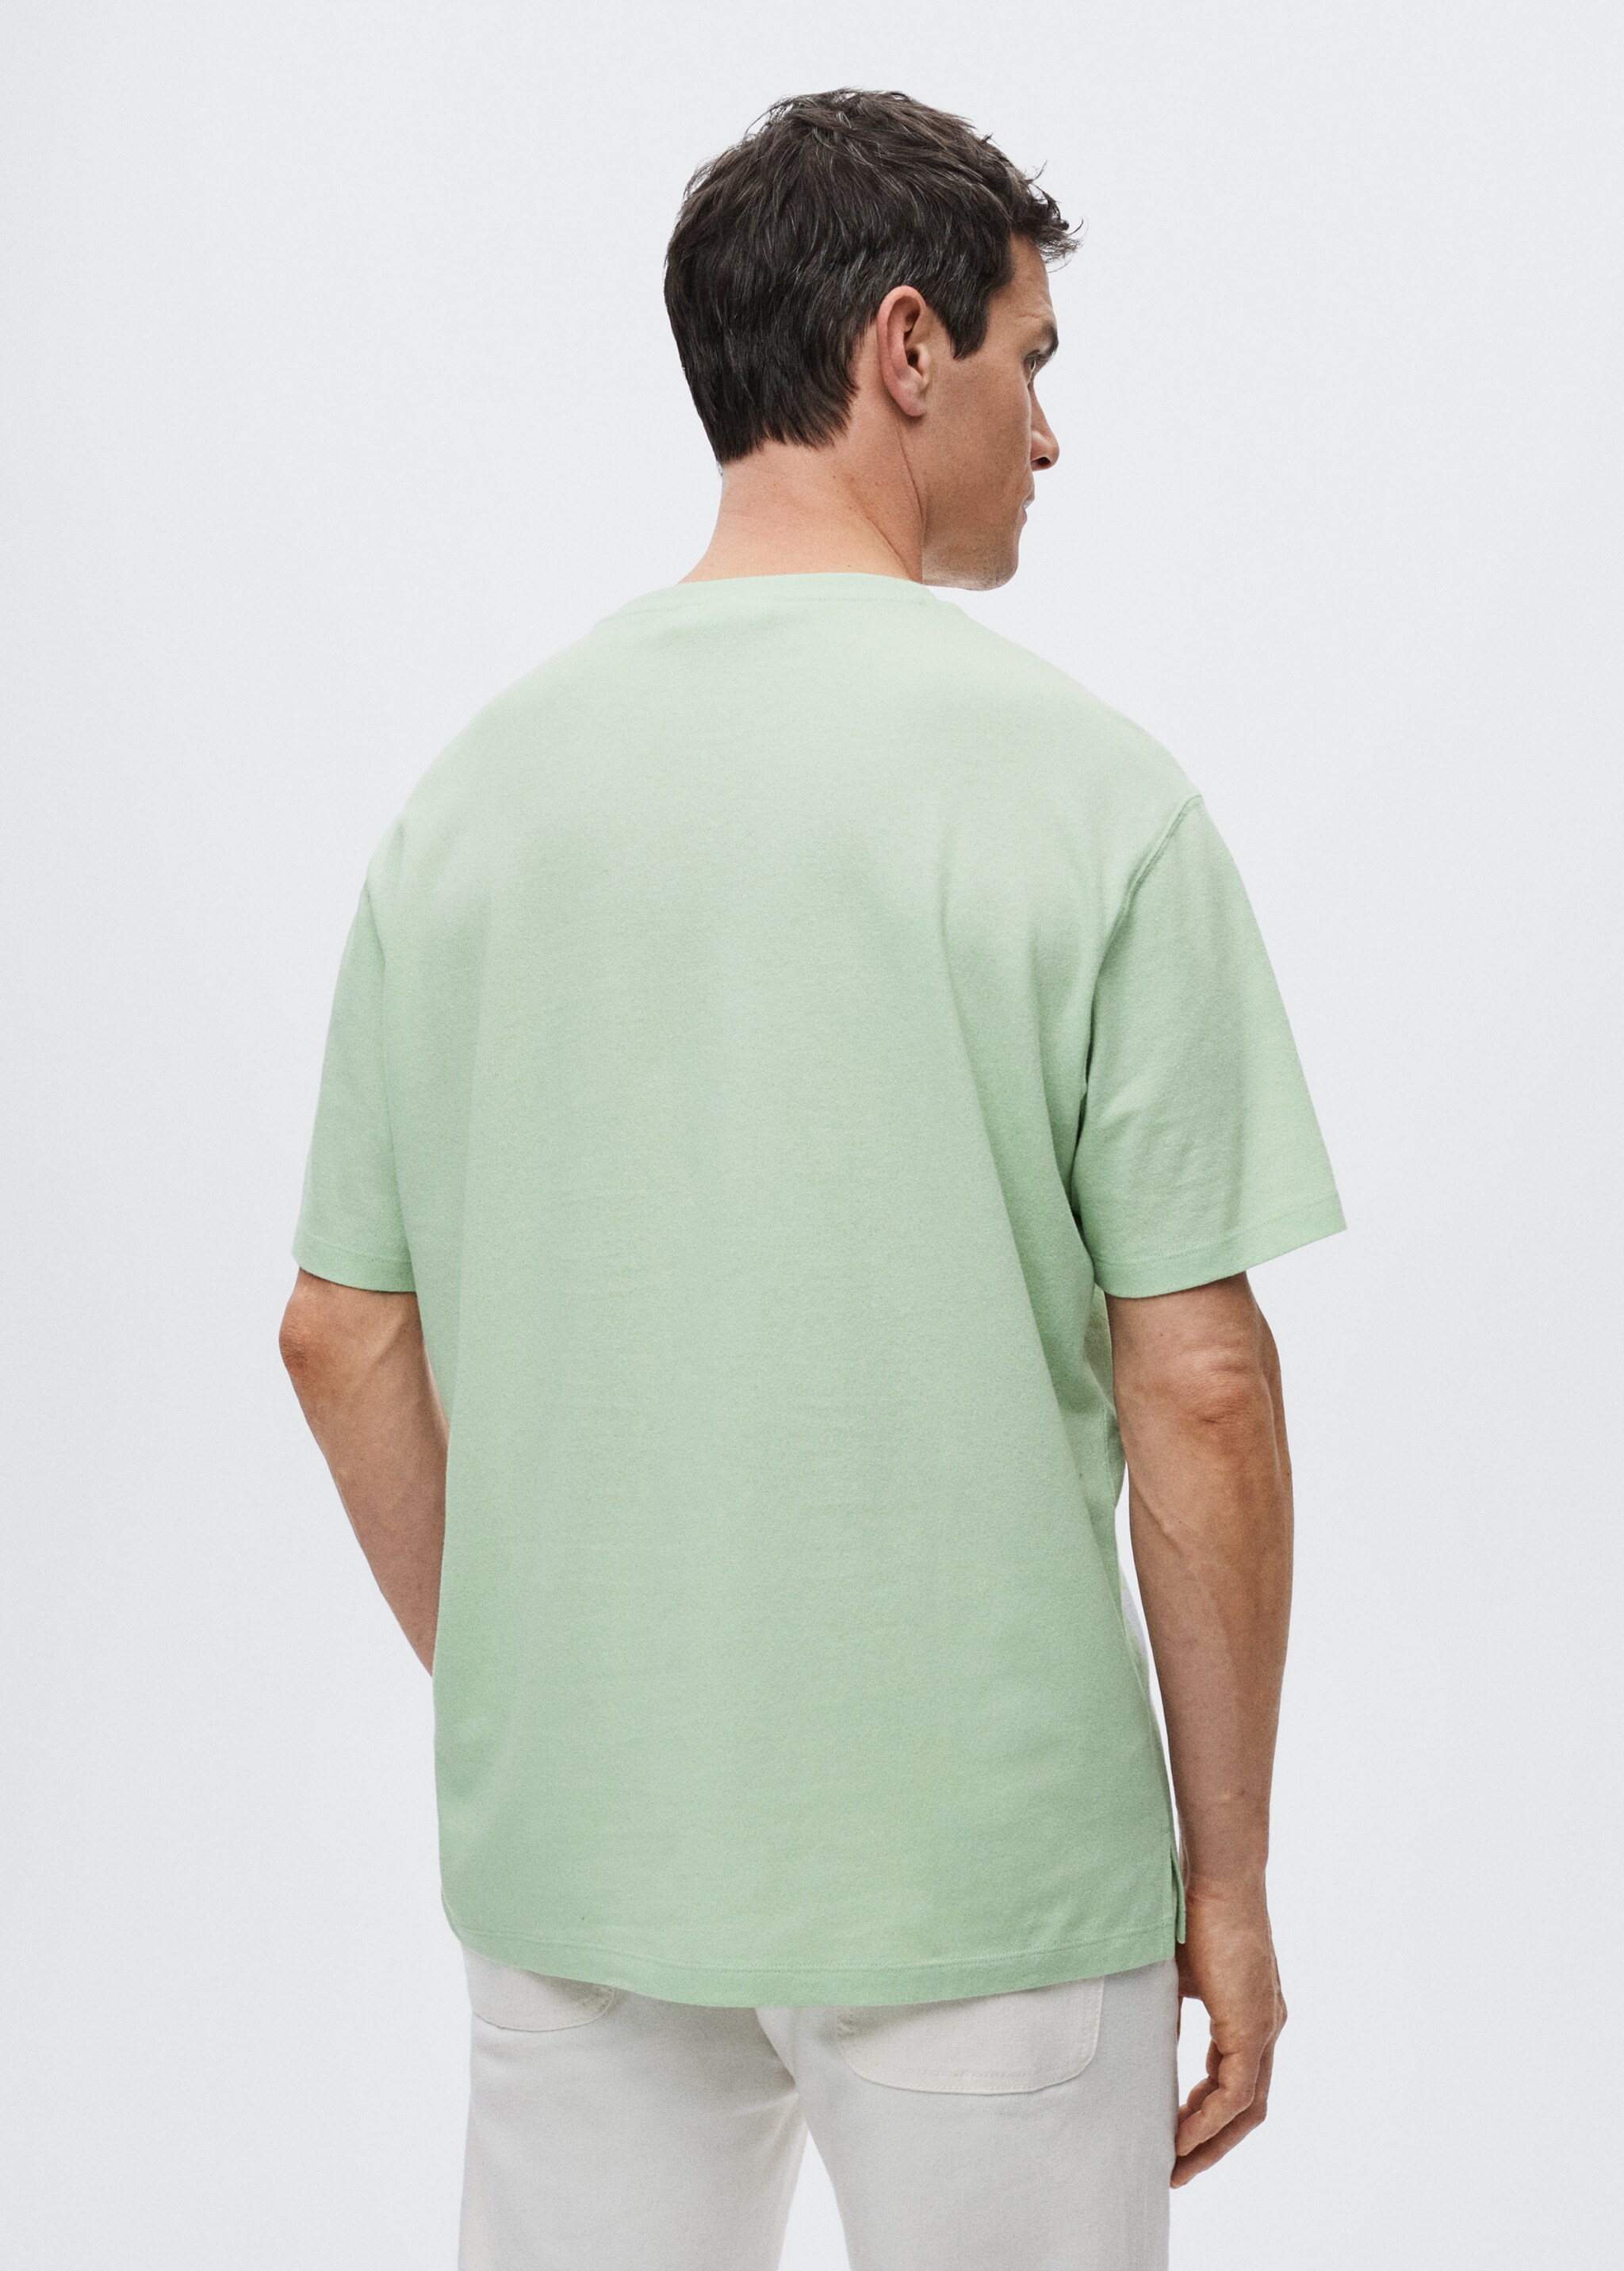 Camiseta algodón lino - Reverso del artículo